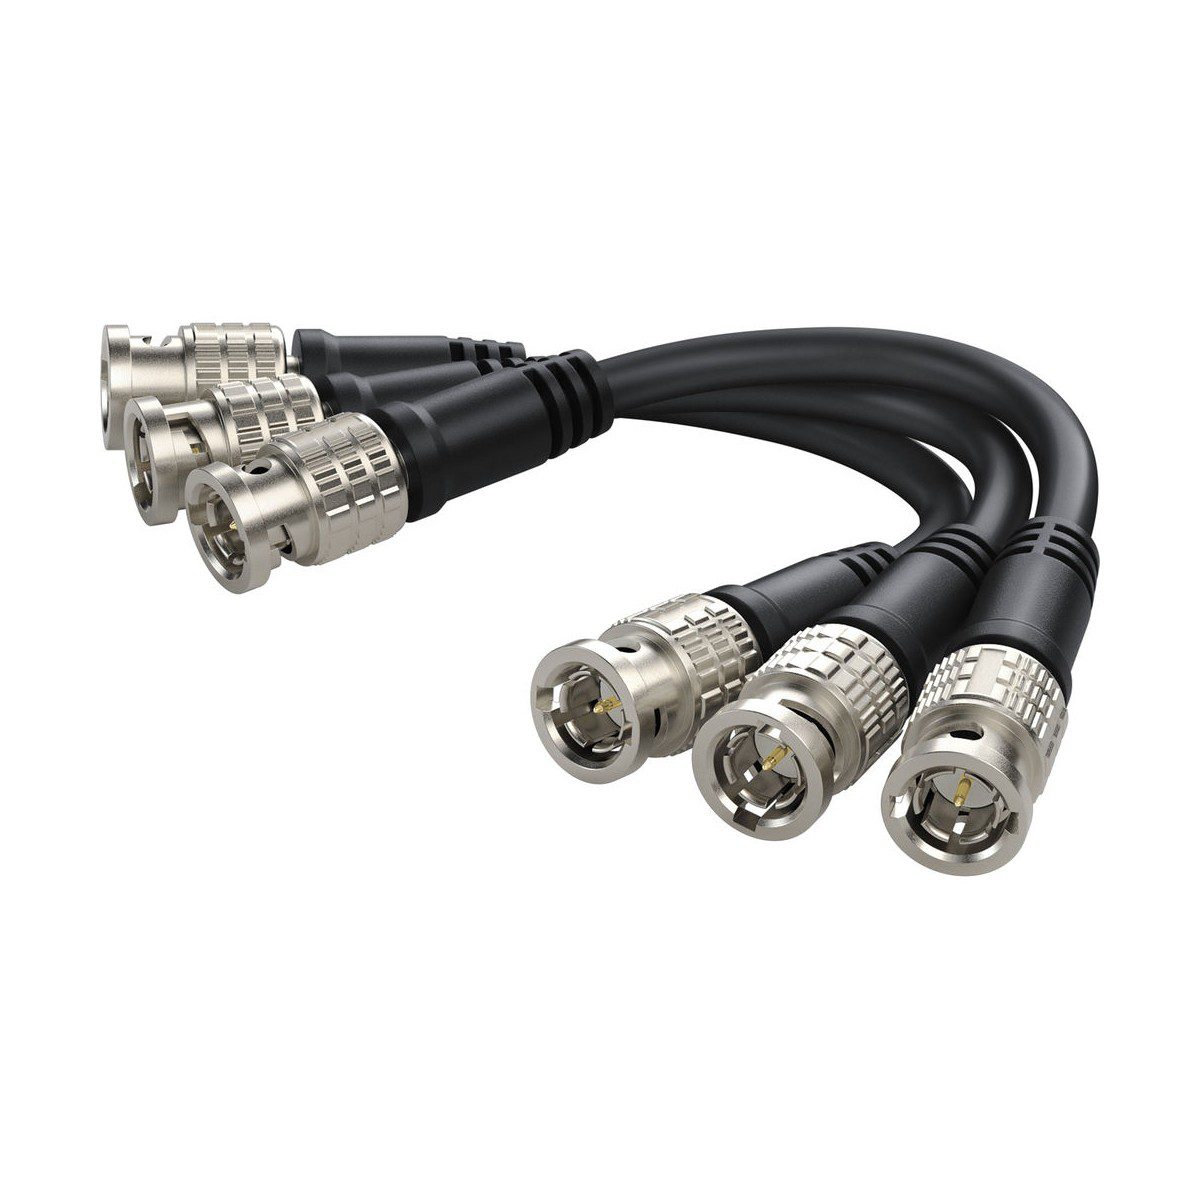 Blackmagic Cable - BNC x 3 Camera Fiber Converter